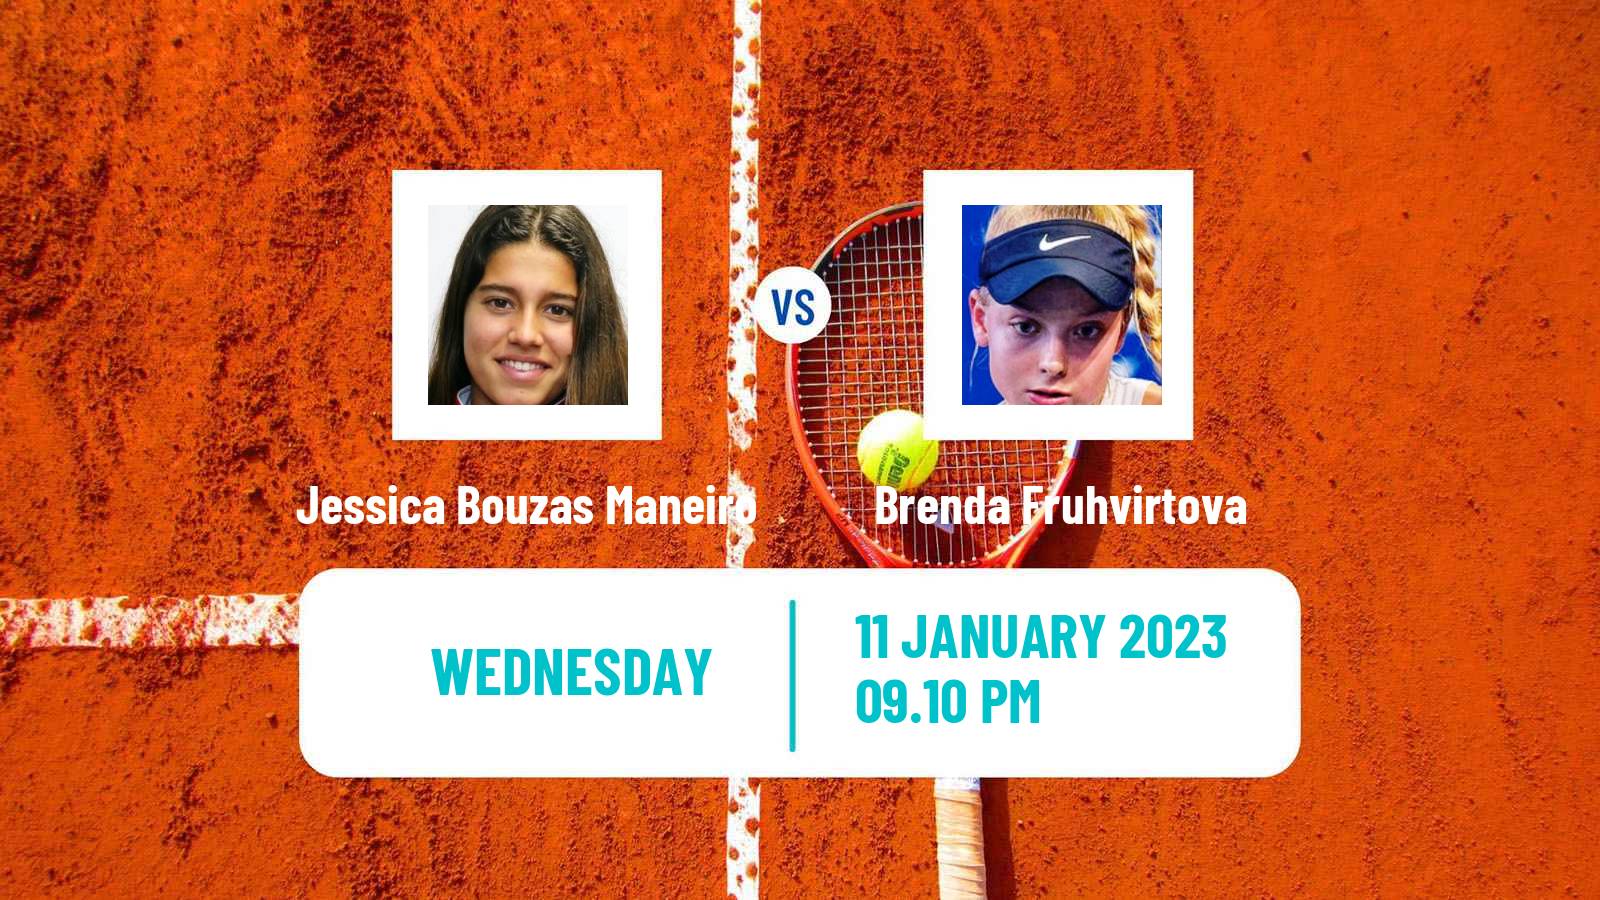 Tennis WTA Australian Open Jessica Bouzas Maneiro - Brenda Fruhvirtova